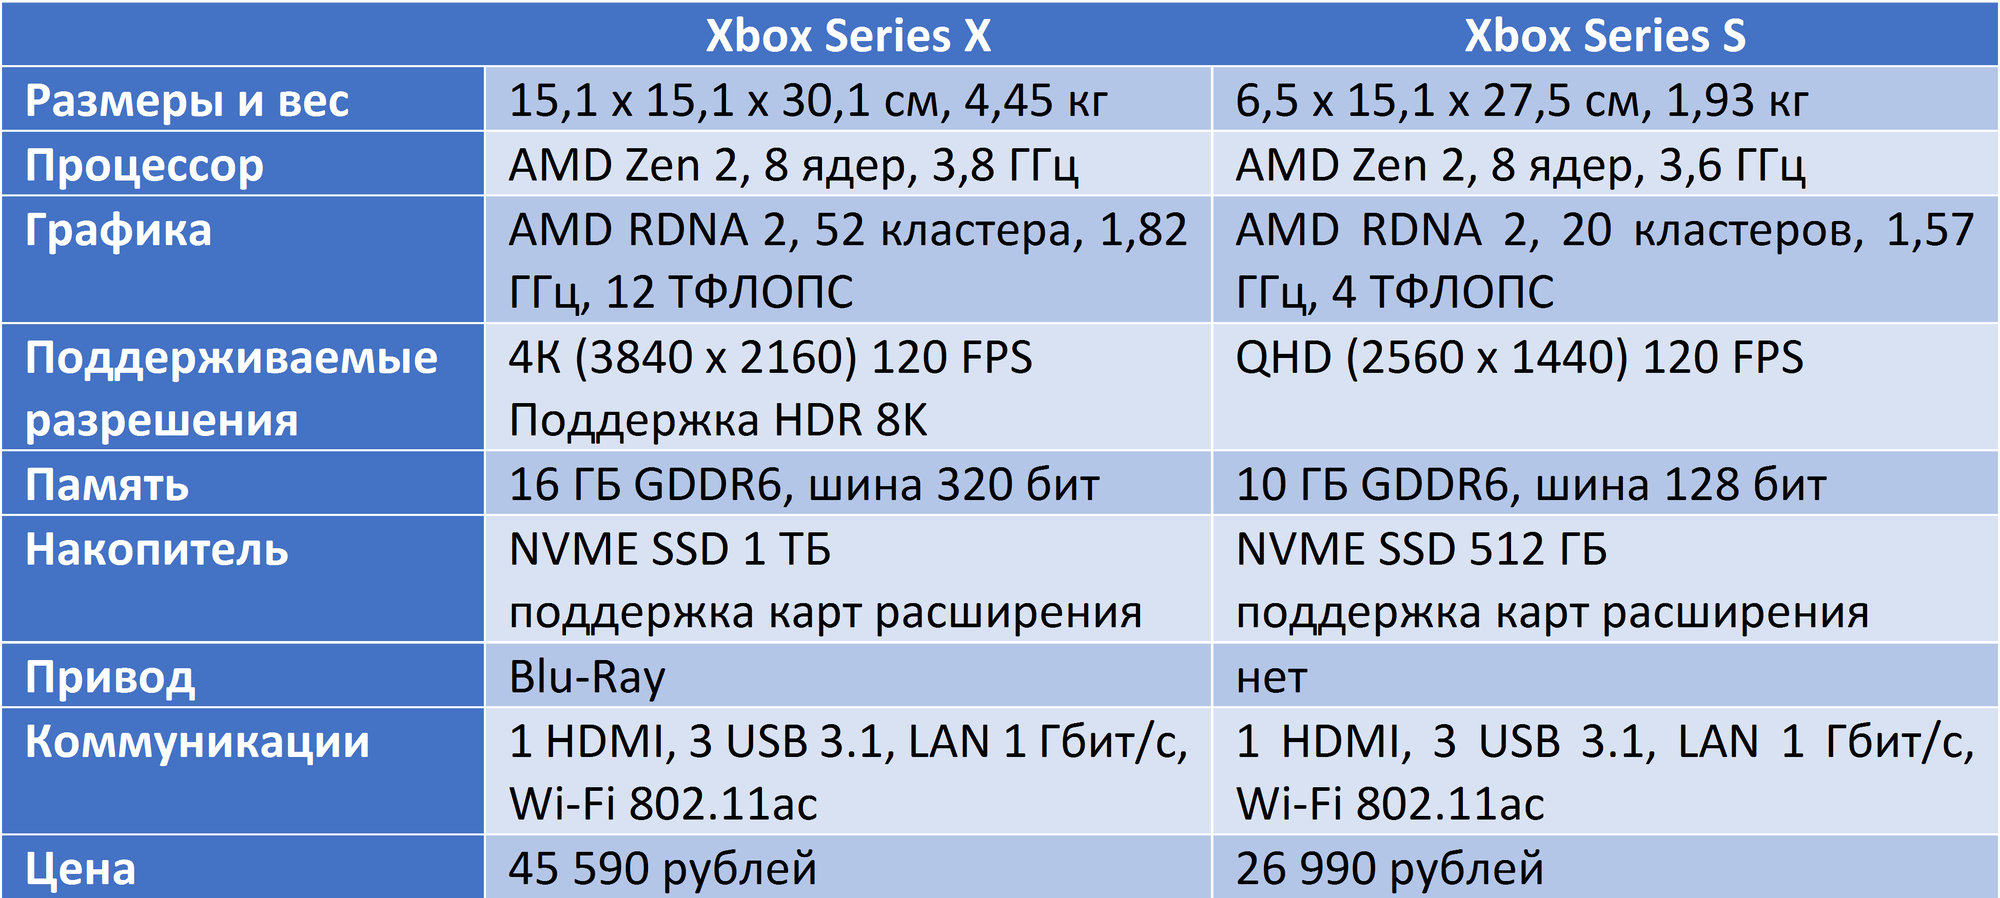 Xbox series s x сравнение. Xbox one x характеристики железа. Xbox Series 1s характеристики. Сравнение характеристик Xbox. Характеристики консолей Xbox.